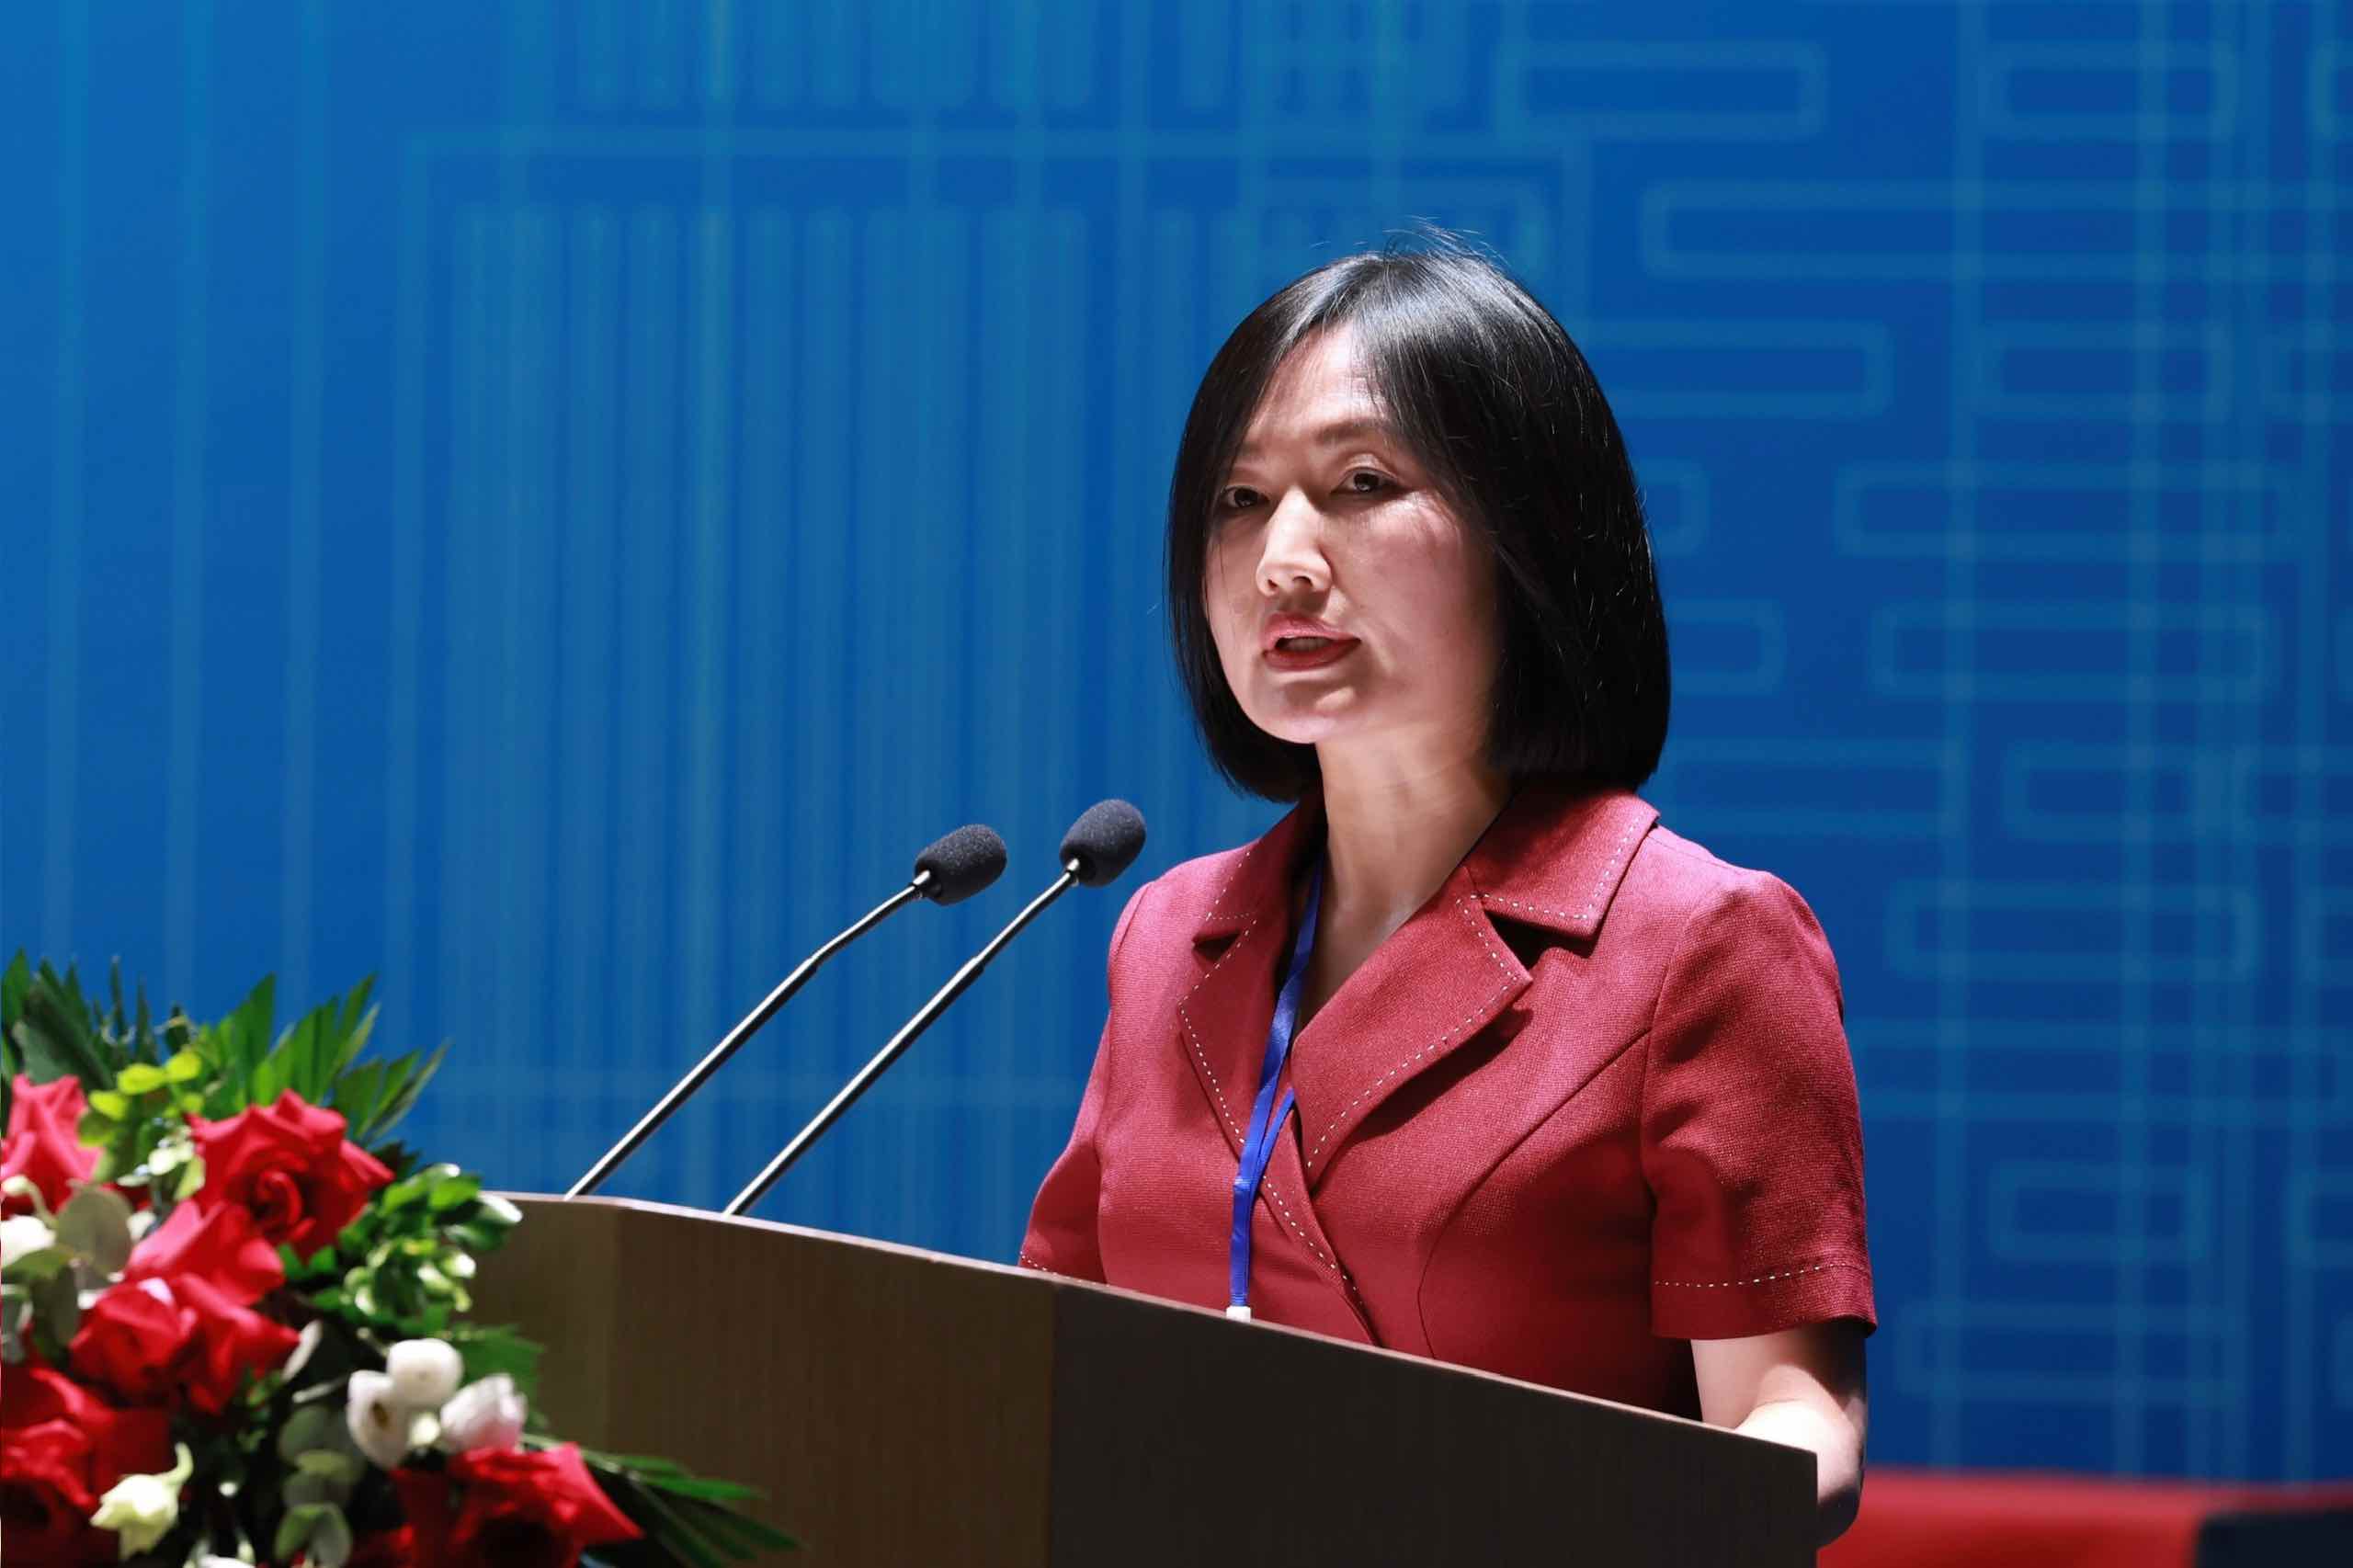 Bà Vũ Thị Mai, Giám đốc nhân sự Tập đoàn Công nghiệp – Viễn thông Quân đội (Viettel). Ảnh: Hải Nguyễn